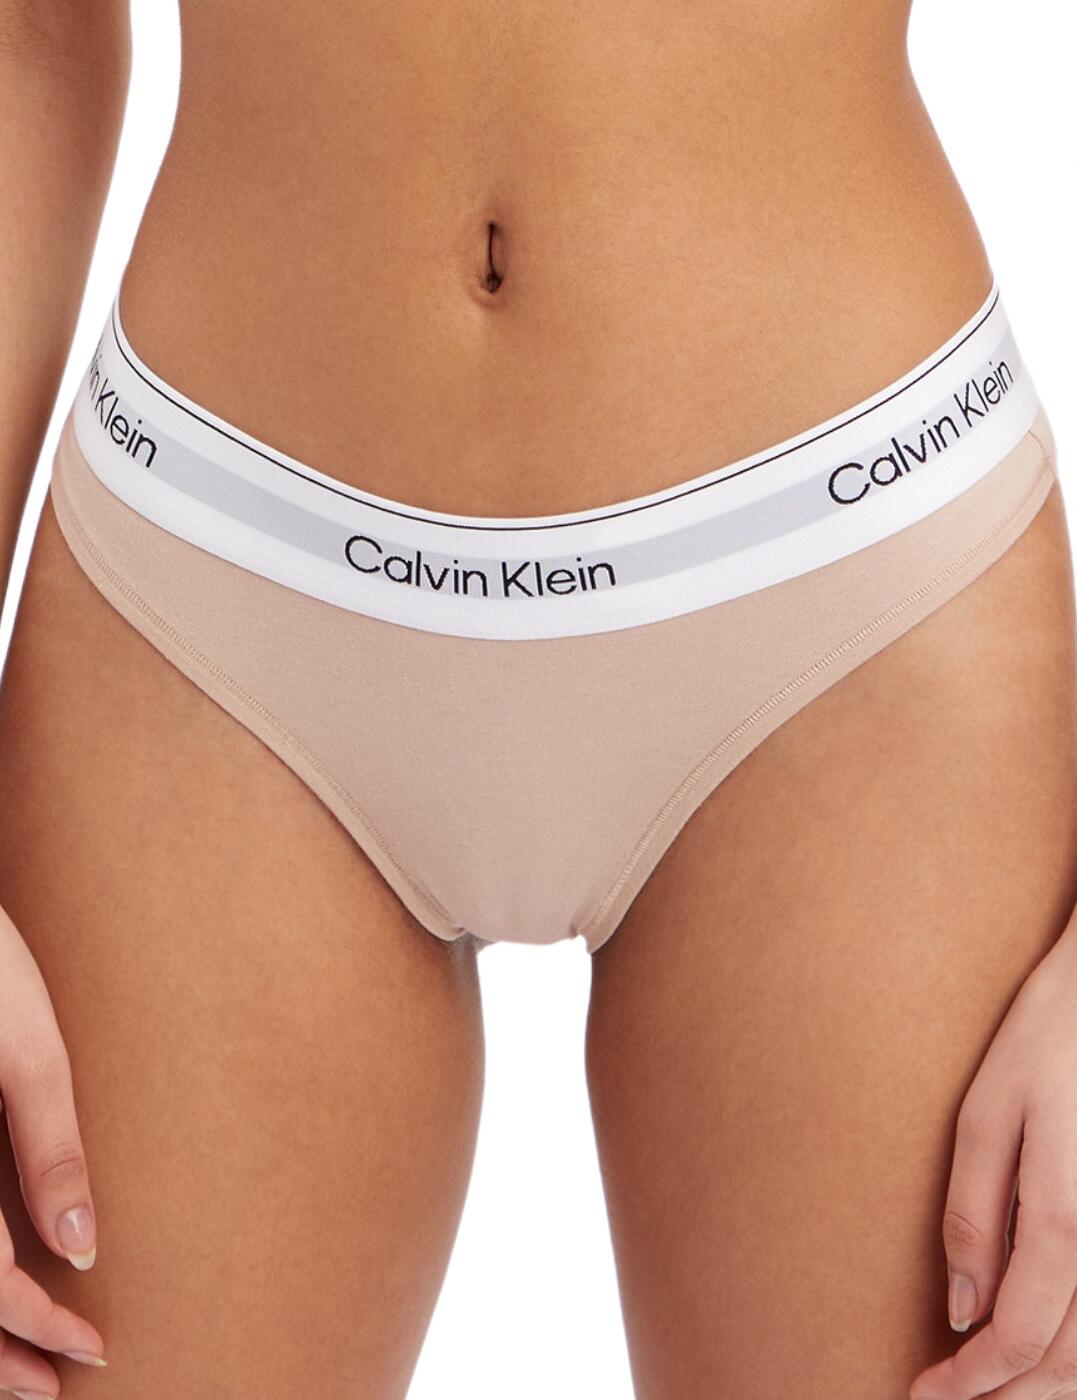 Calvin Klein Modern Cotton Natural Thong Cedar